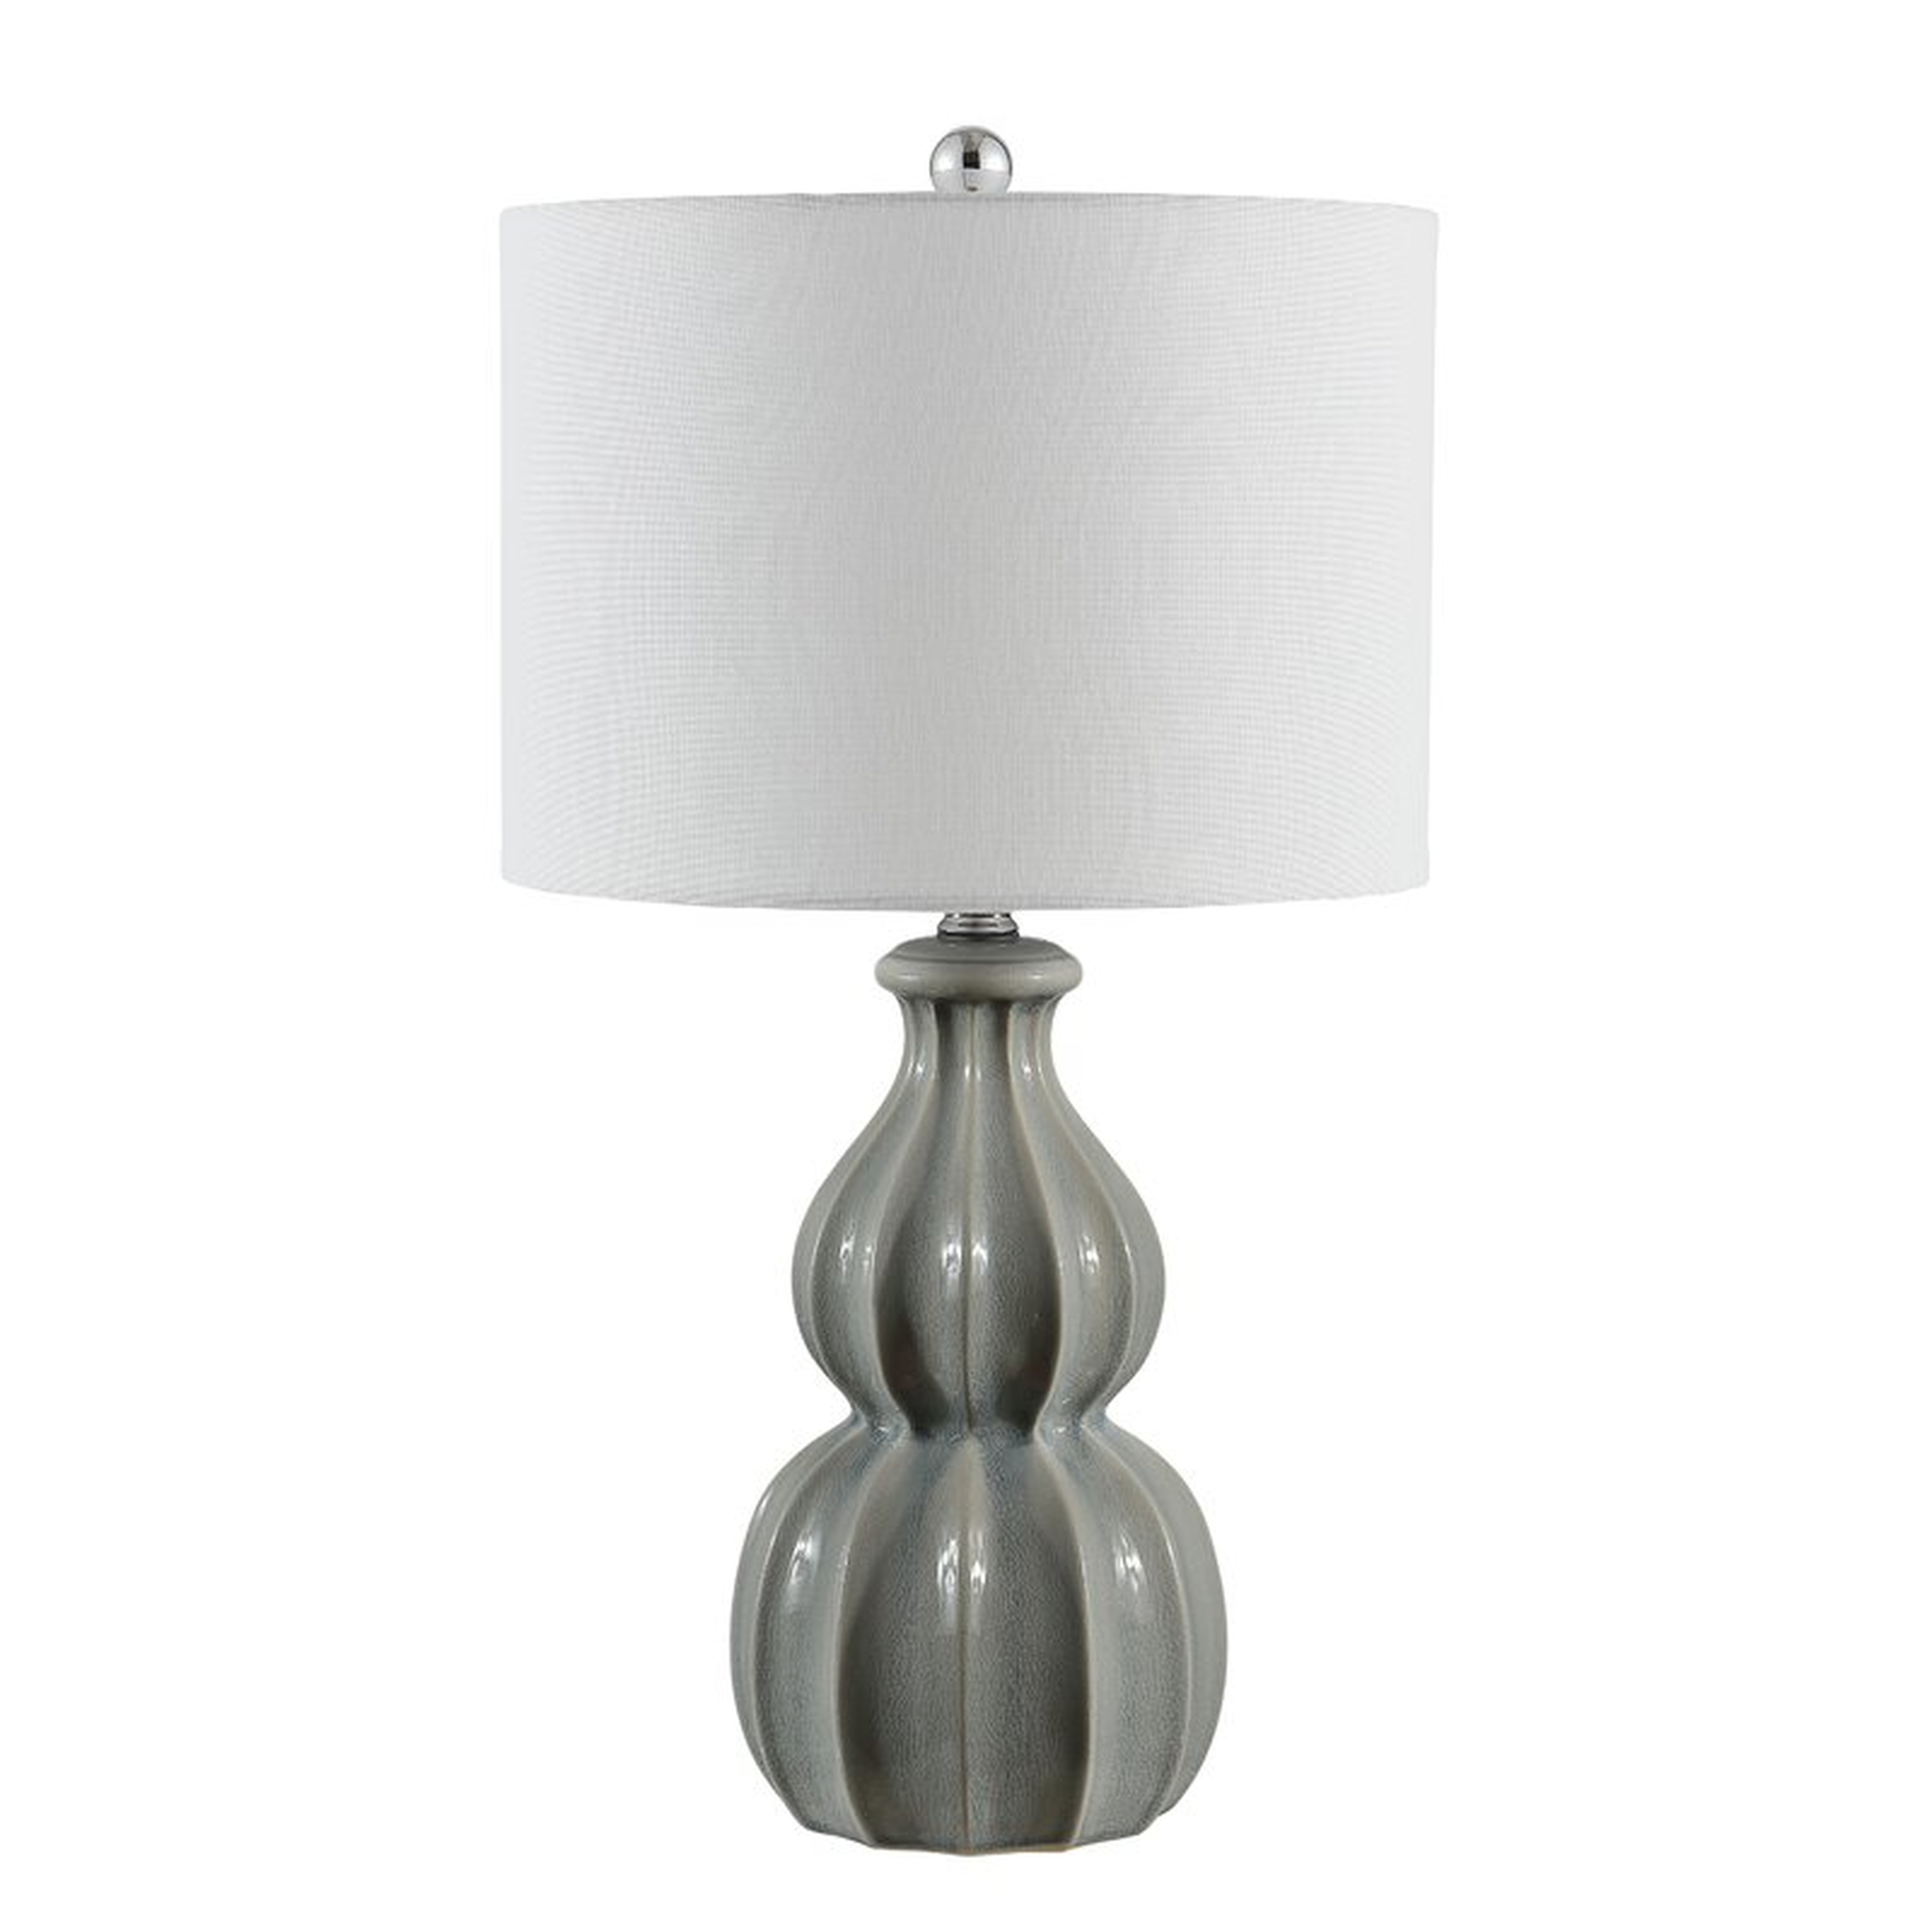 Safavieh 24.5" Standard Lamp - Wayfair